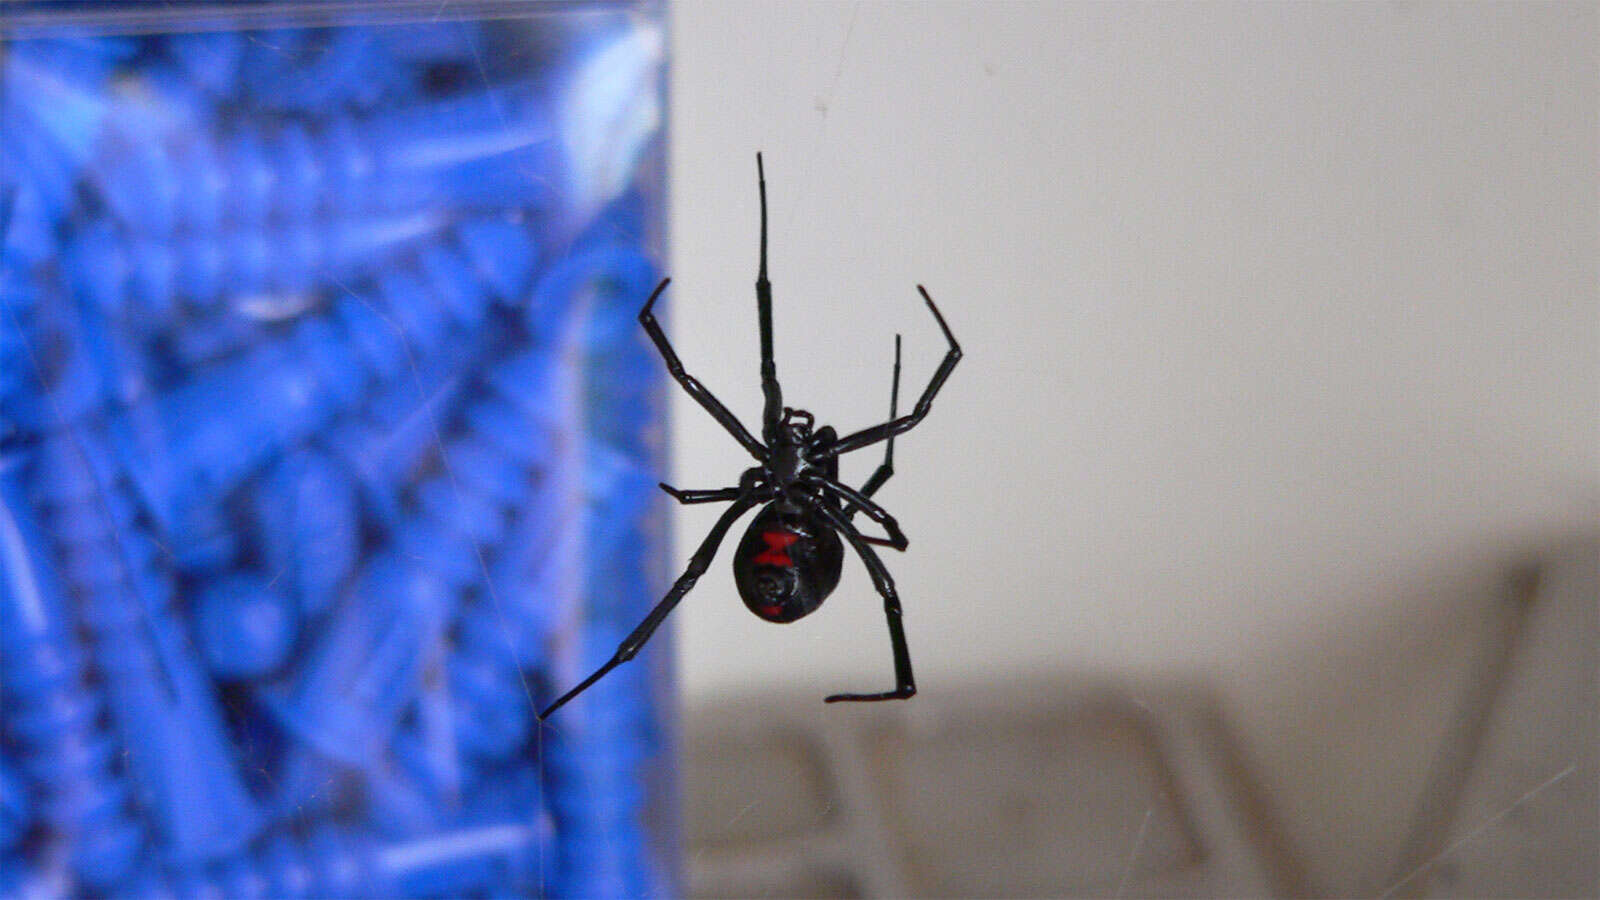 Image of Black widow spider